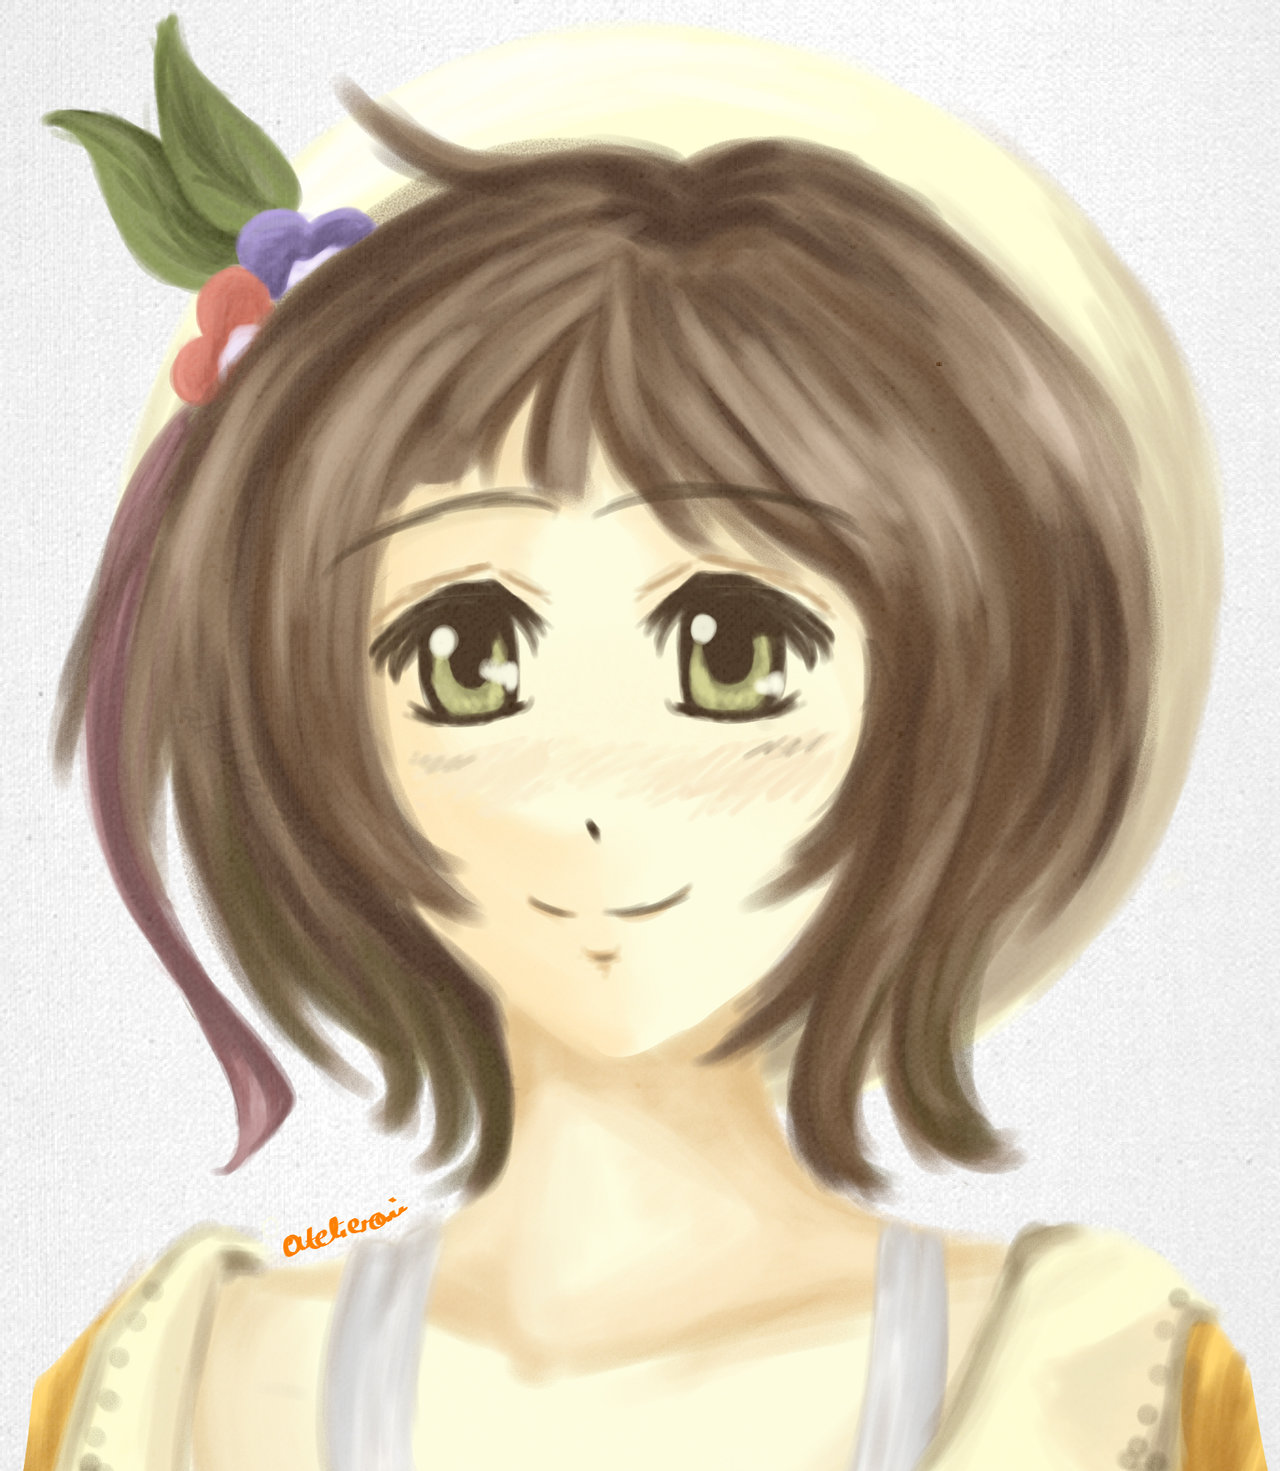 Flowergirl by DaydreamMythology